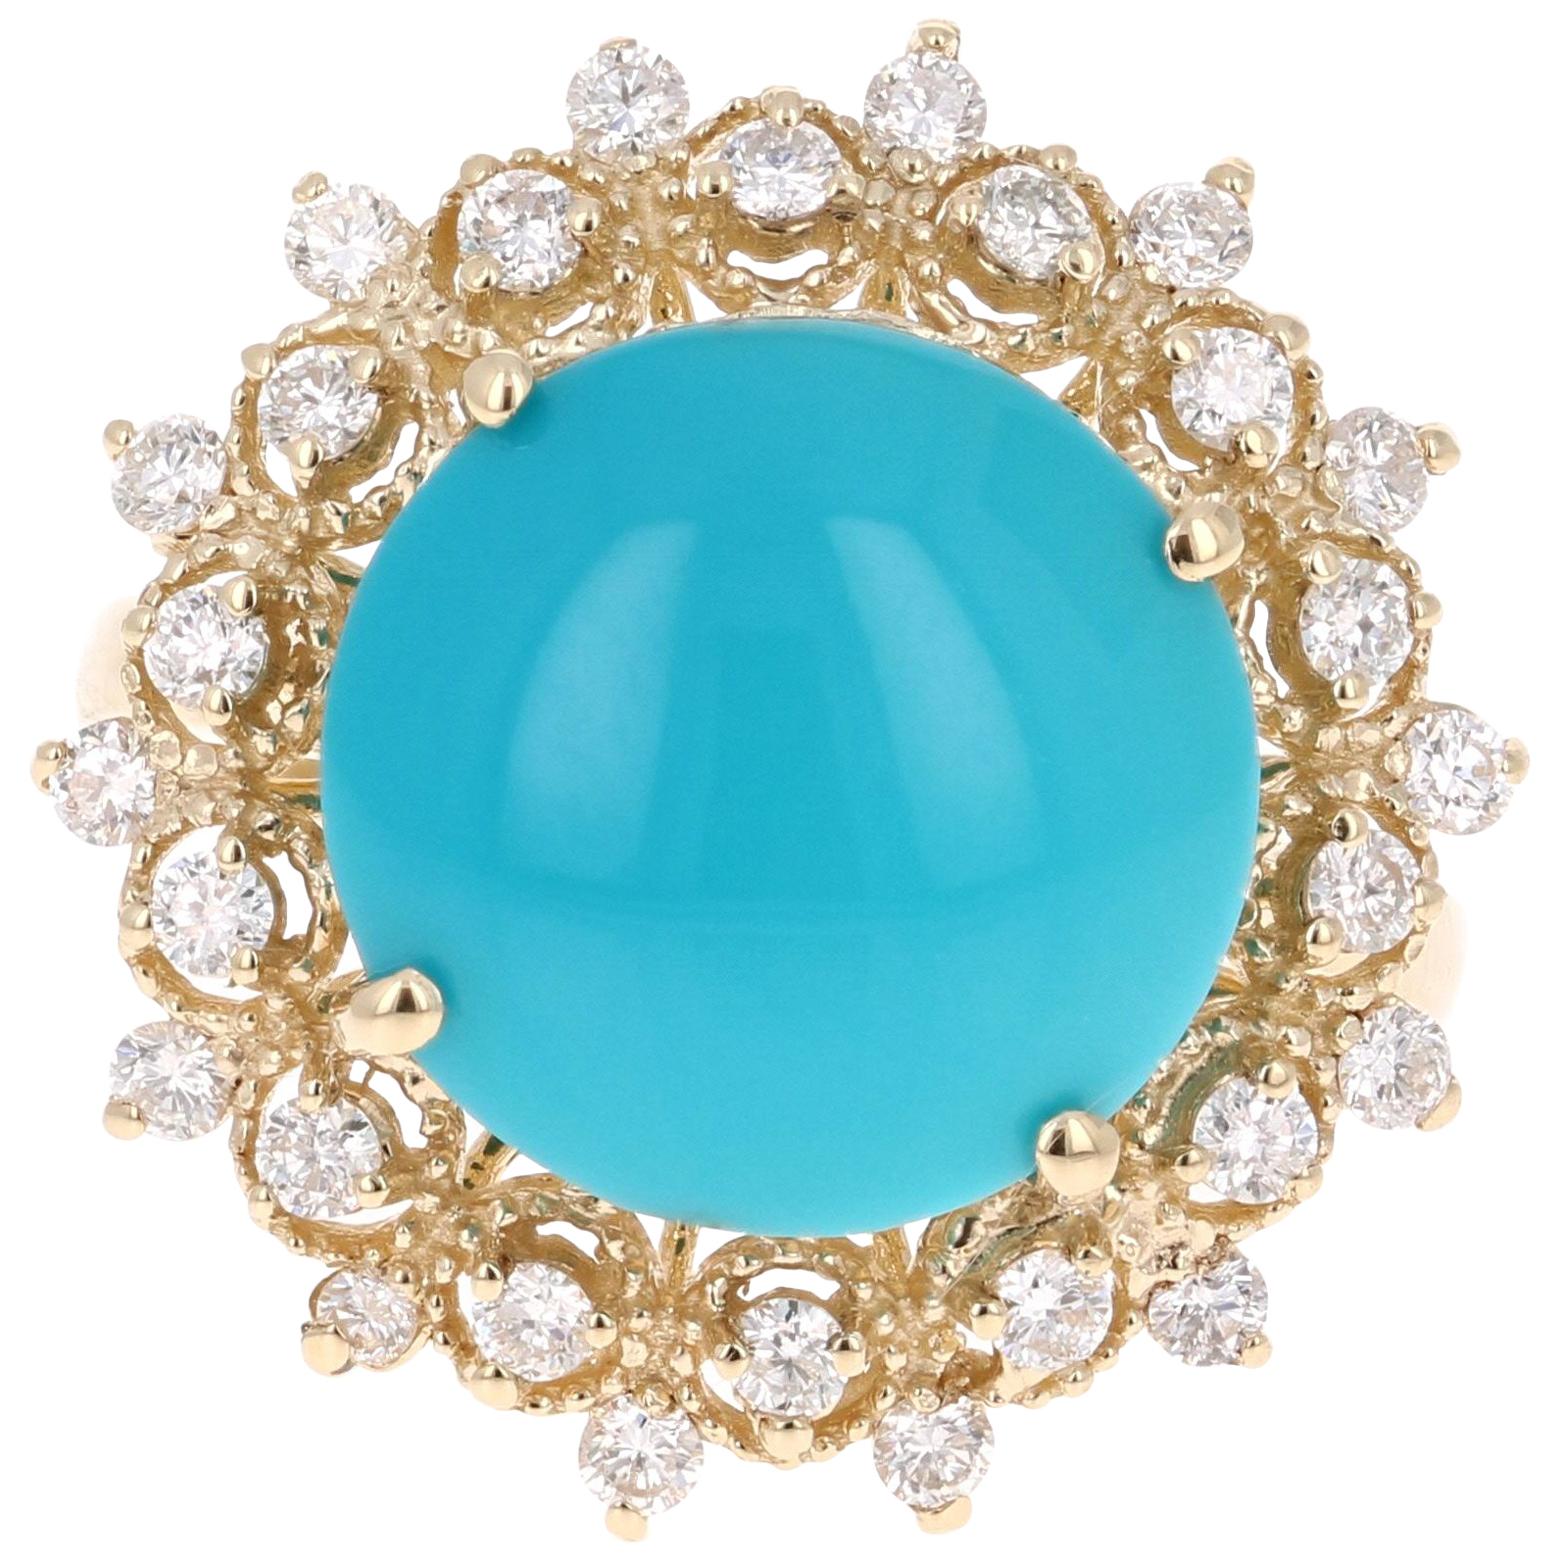 5.93 Carat Round Cut Turquoise Diamond 14 Karat Yellow Gold Ring